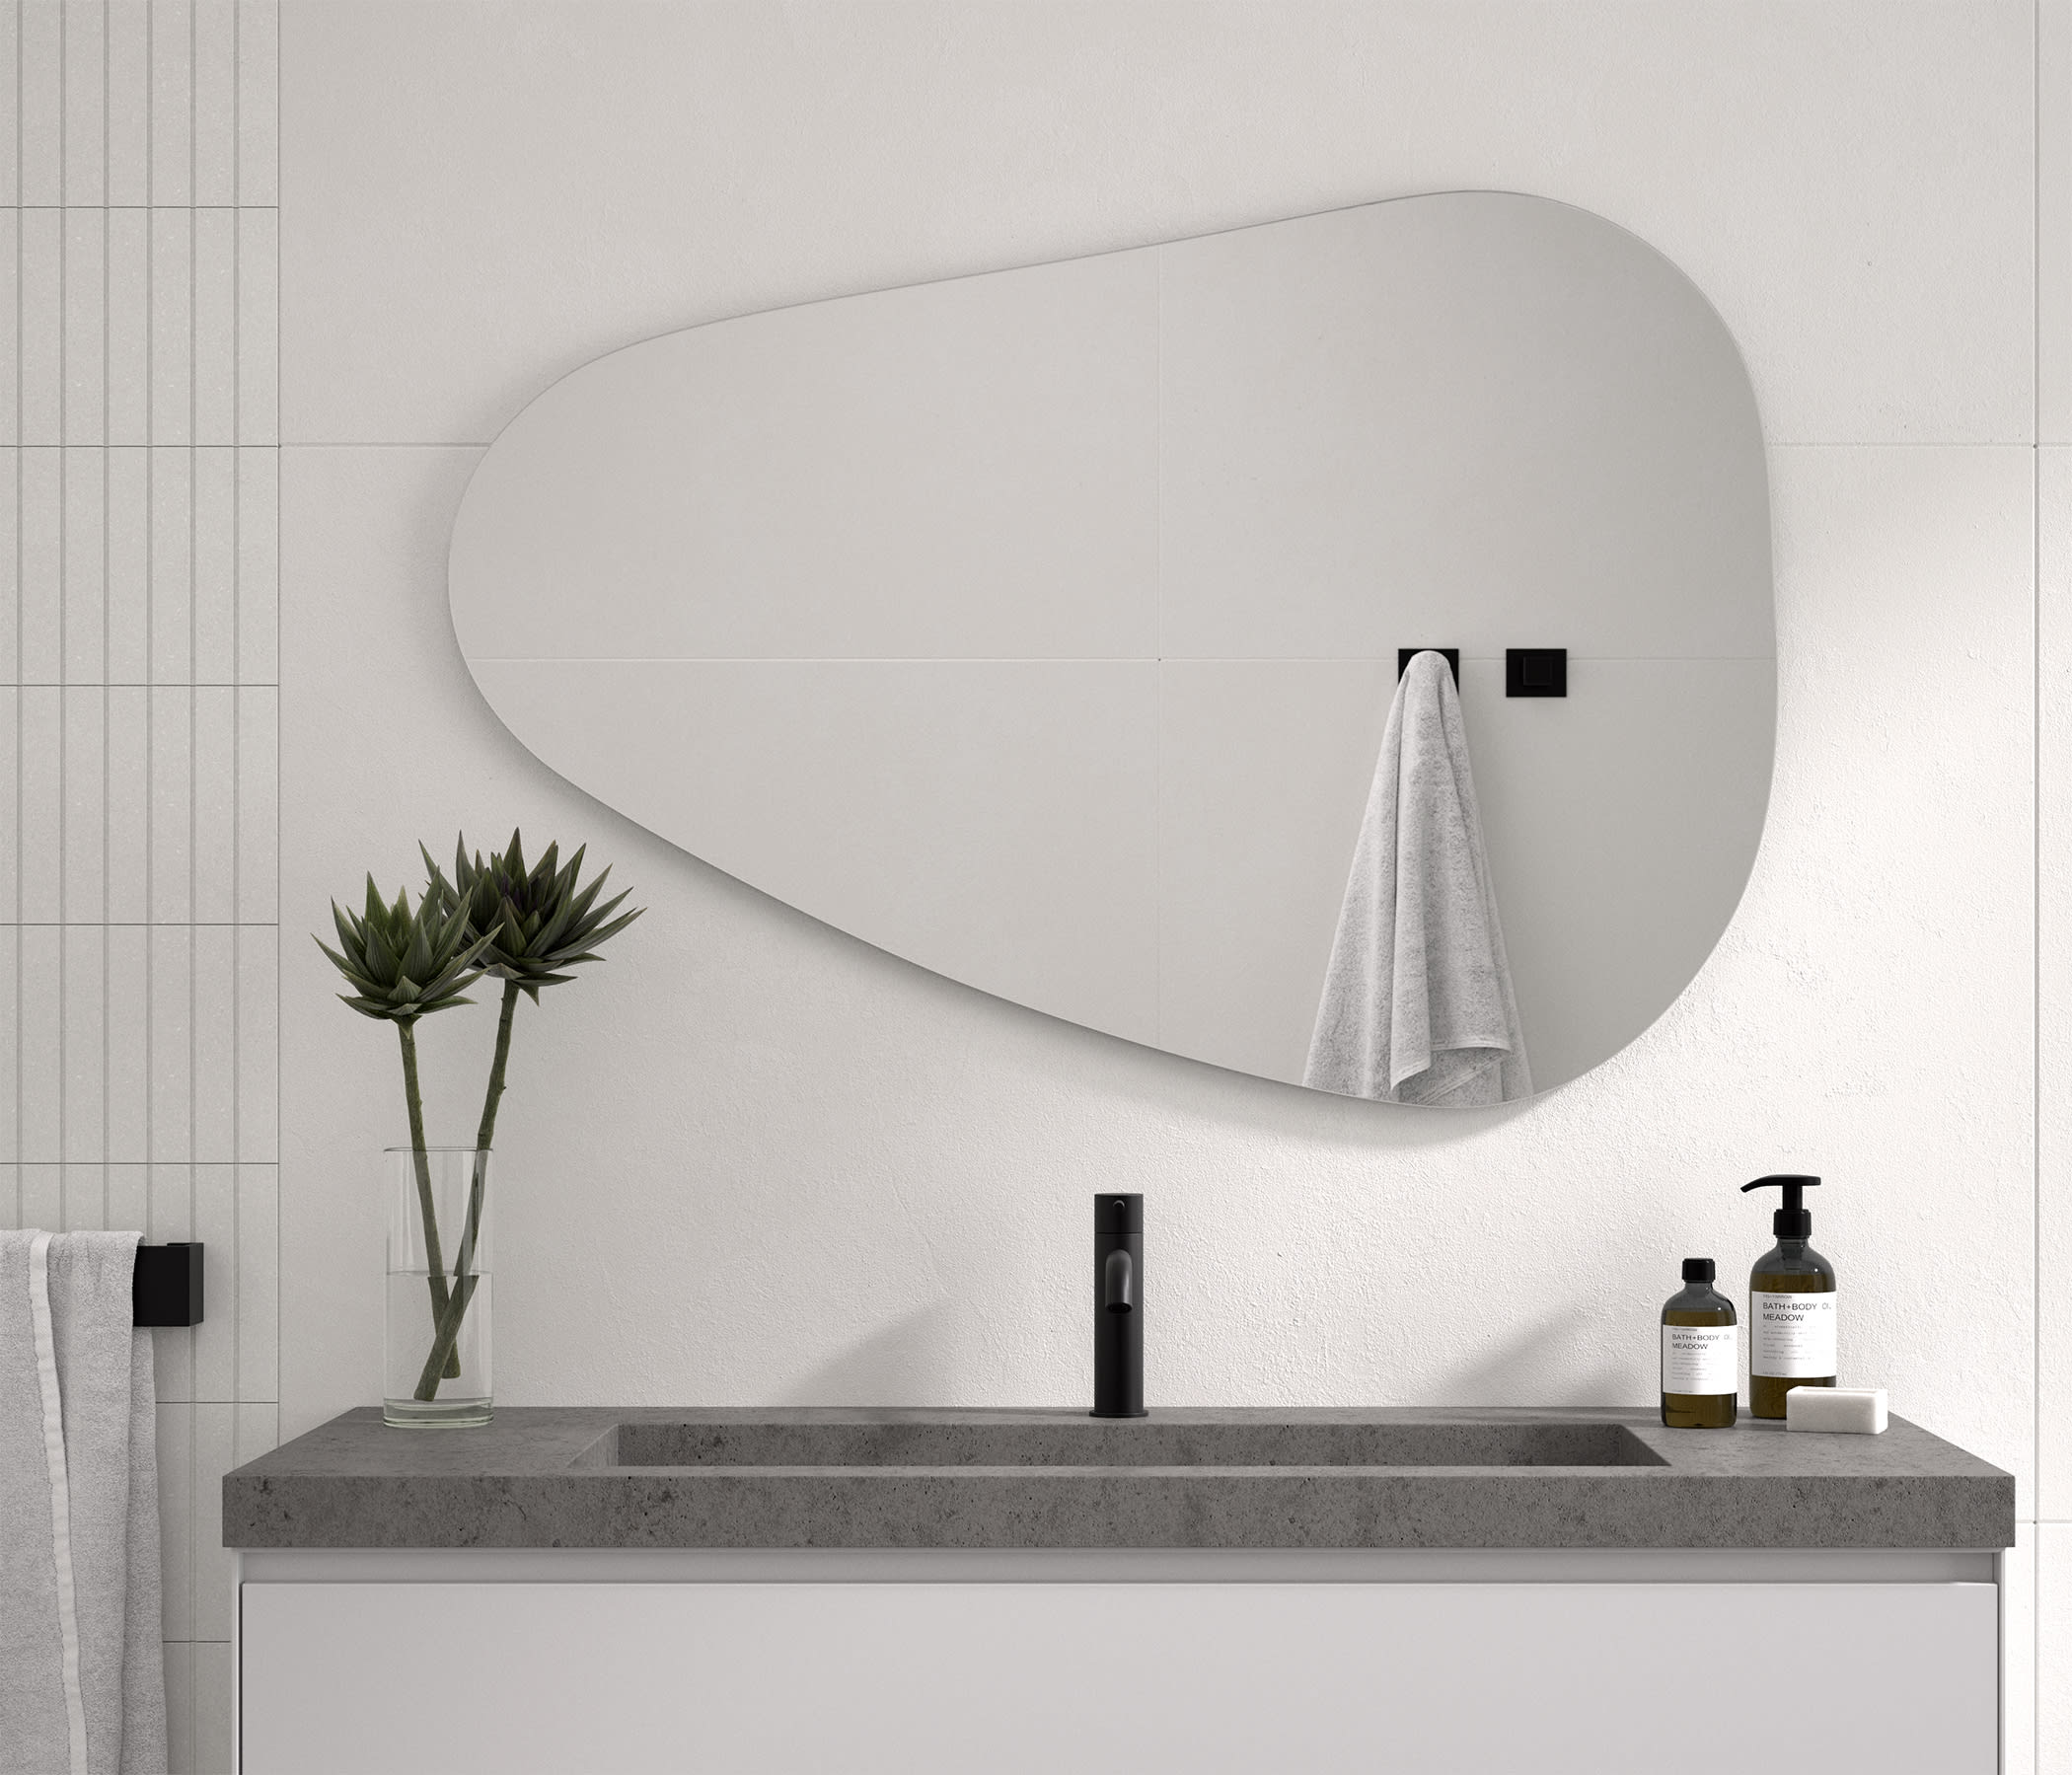 ▷ Espejos de baño sin luz LED, Envíos gratis